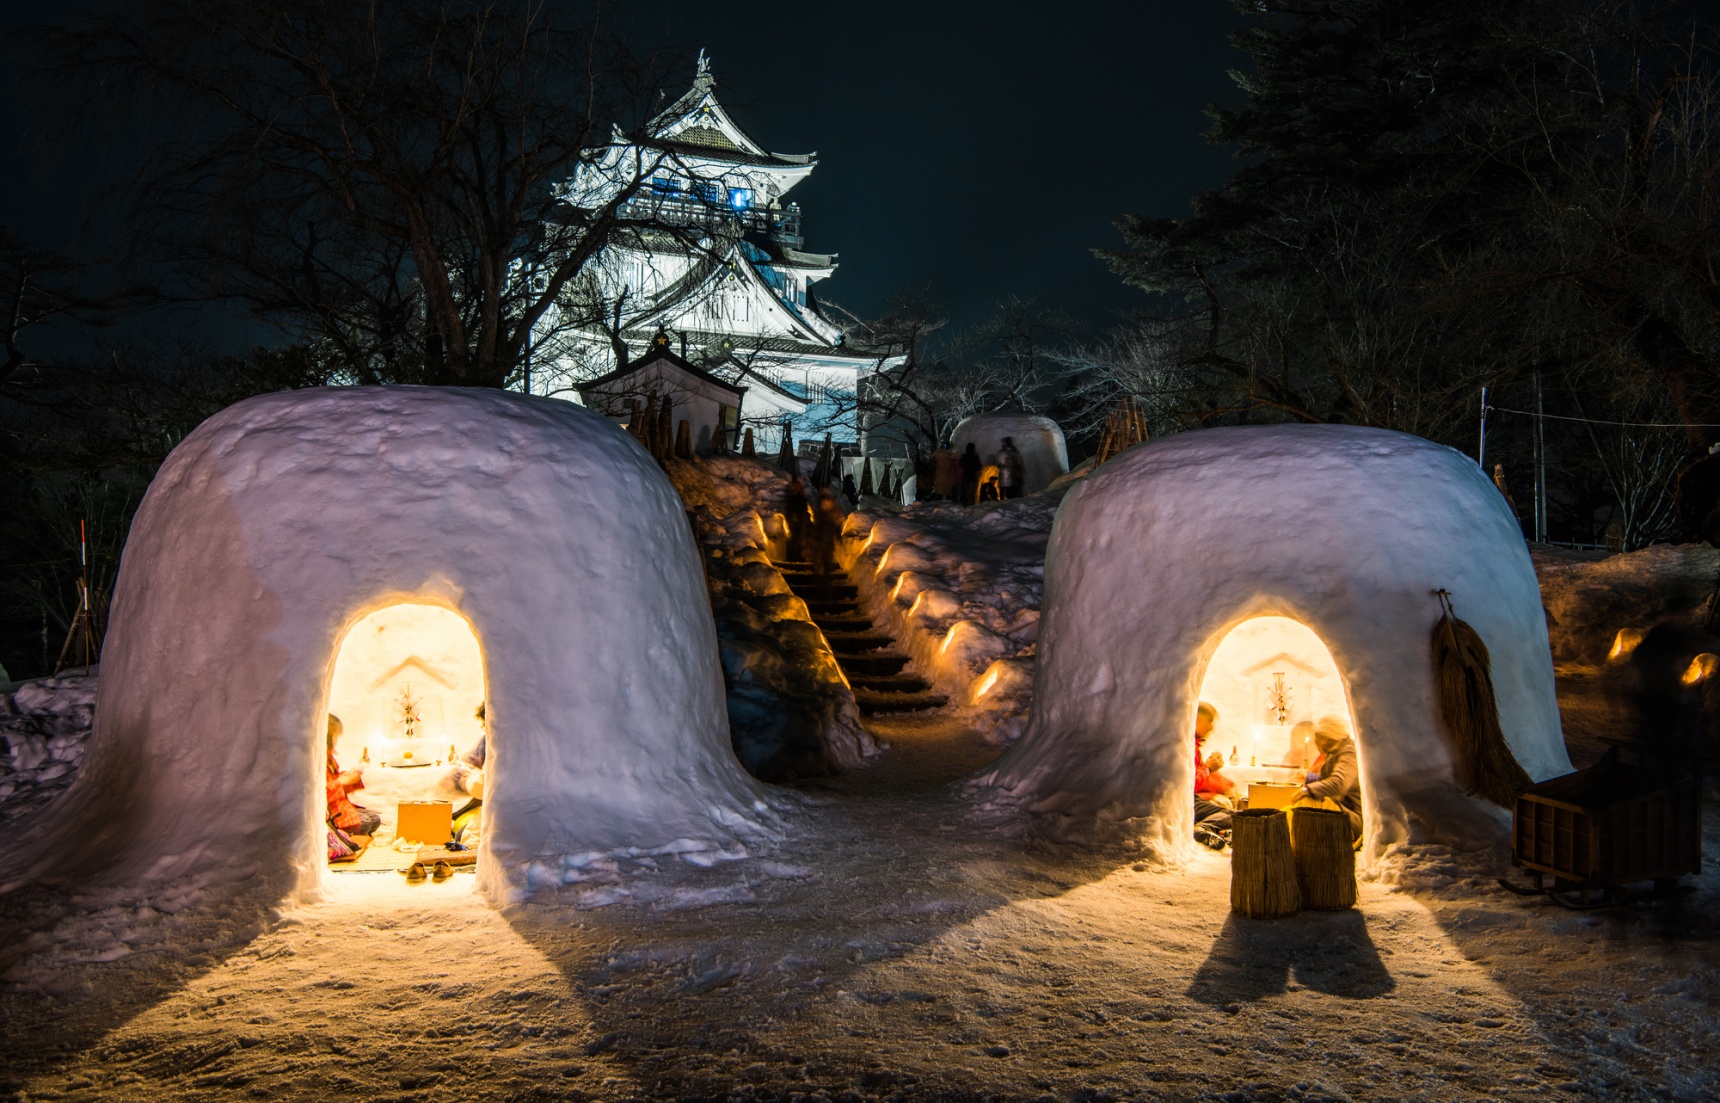 ชม 3 งานเทศกาลหิมะสุดยิ่งใหญ่ในญี่ปุ่น